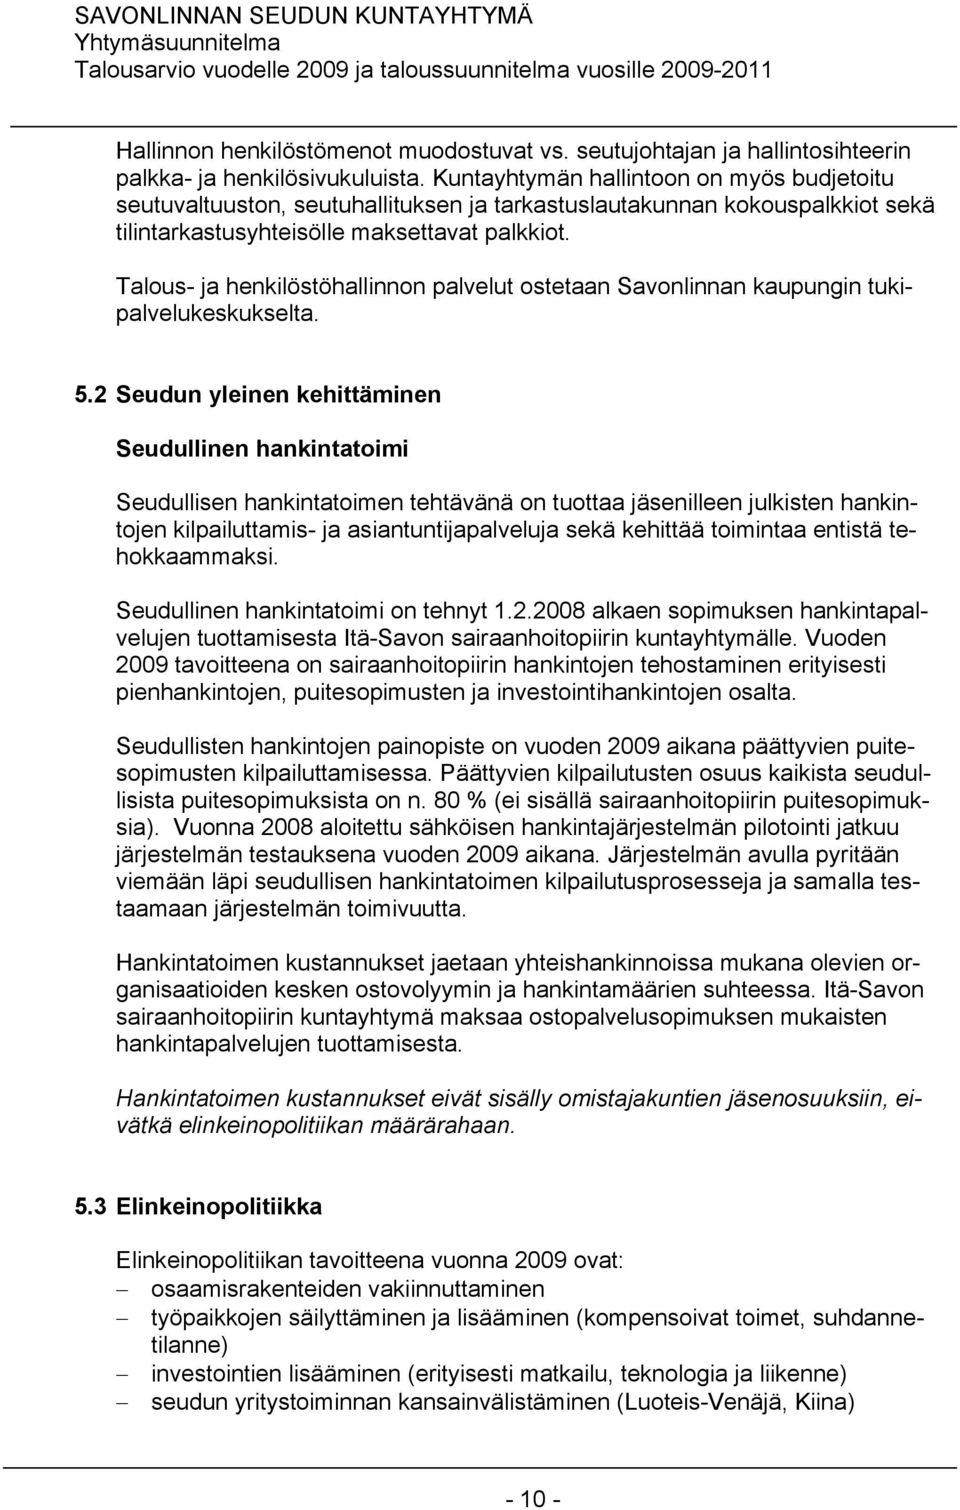 Talous- ja henkilöstöhallinnon palvelut ostetaan Savonlinnan kaupungin tukipalvelukeskukselta. 5.